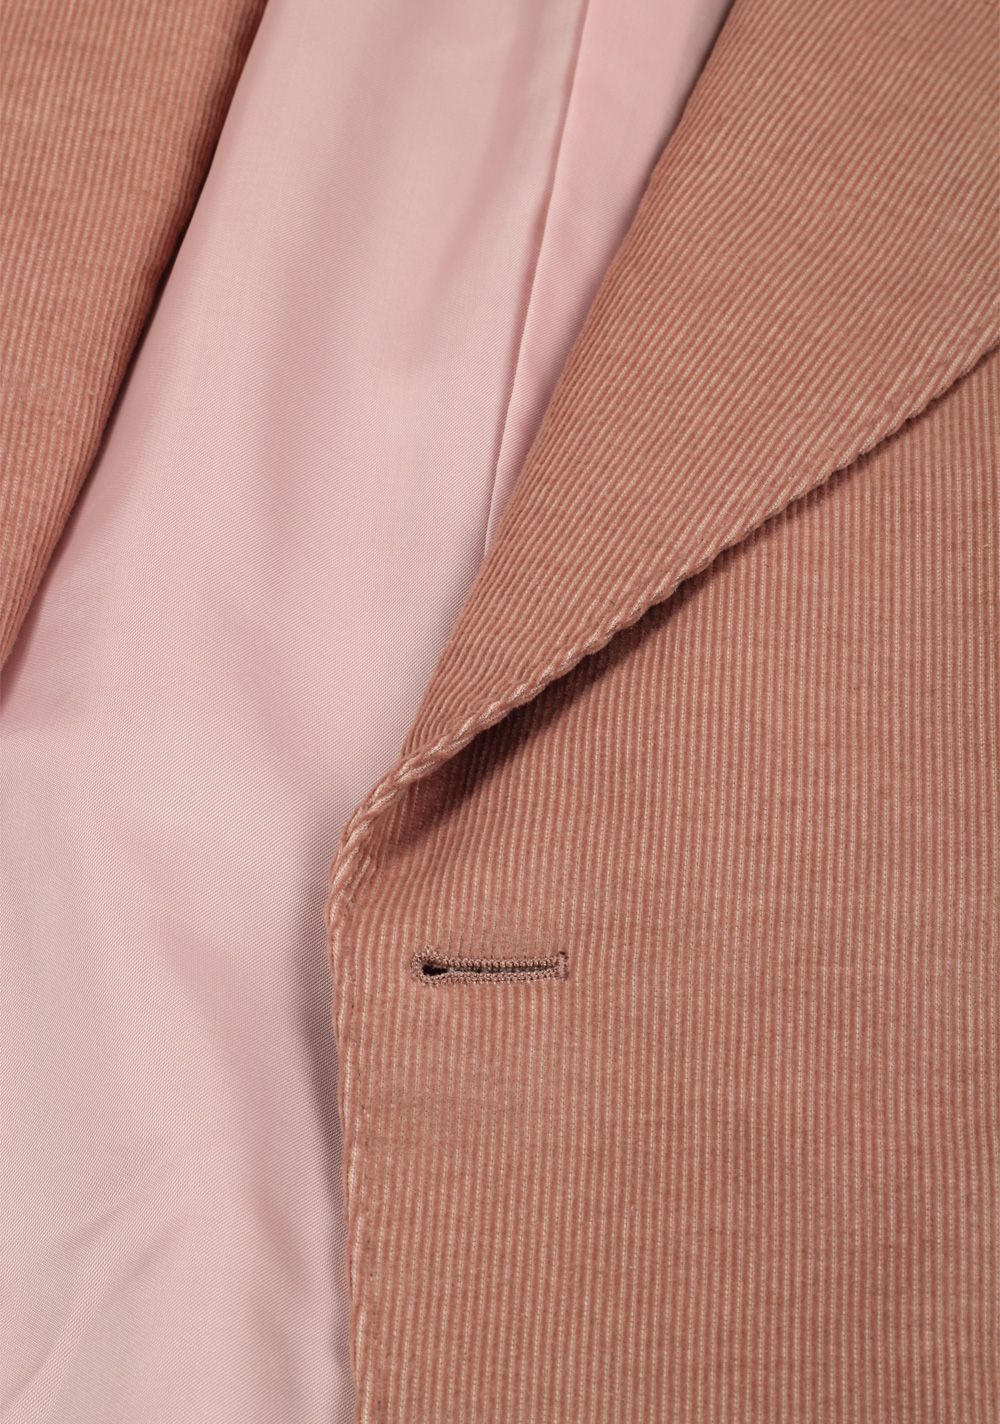 TOM FORD Atticus Pink Corduroy Suit Size 46 / 36R U.S. In Cotton Linen | Costume Limité